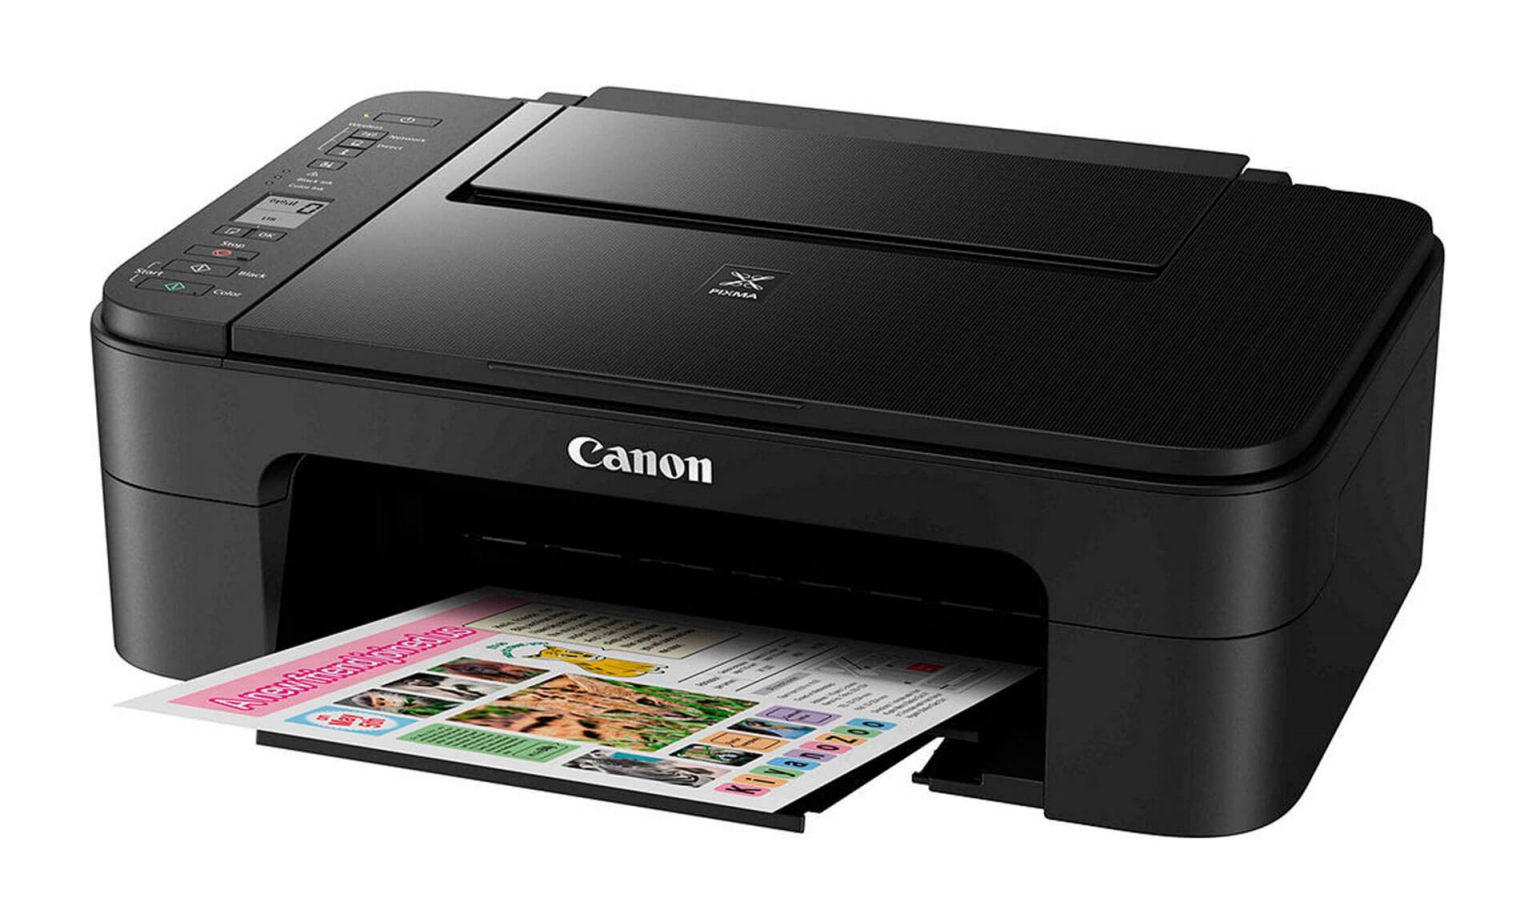 canon ip2700 printer quailty not so good